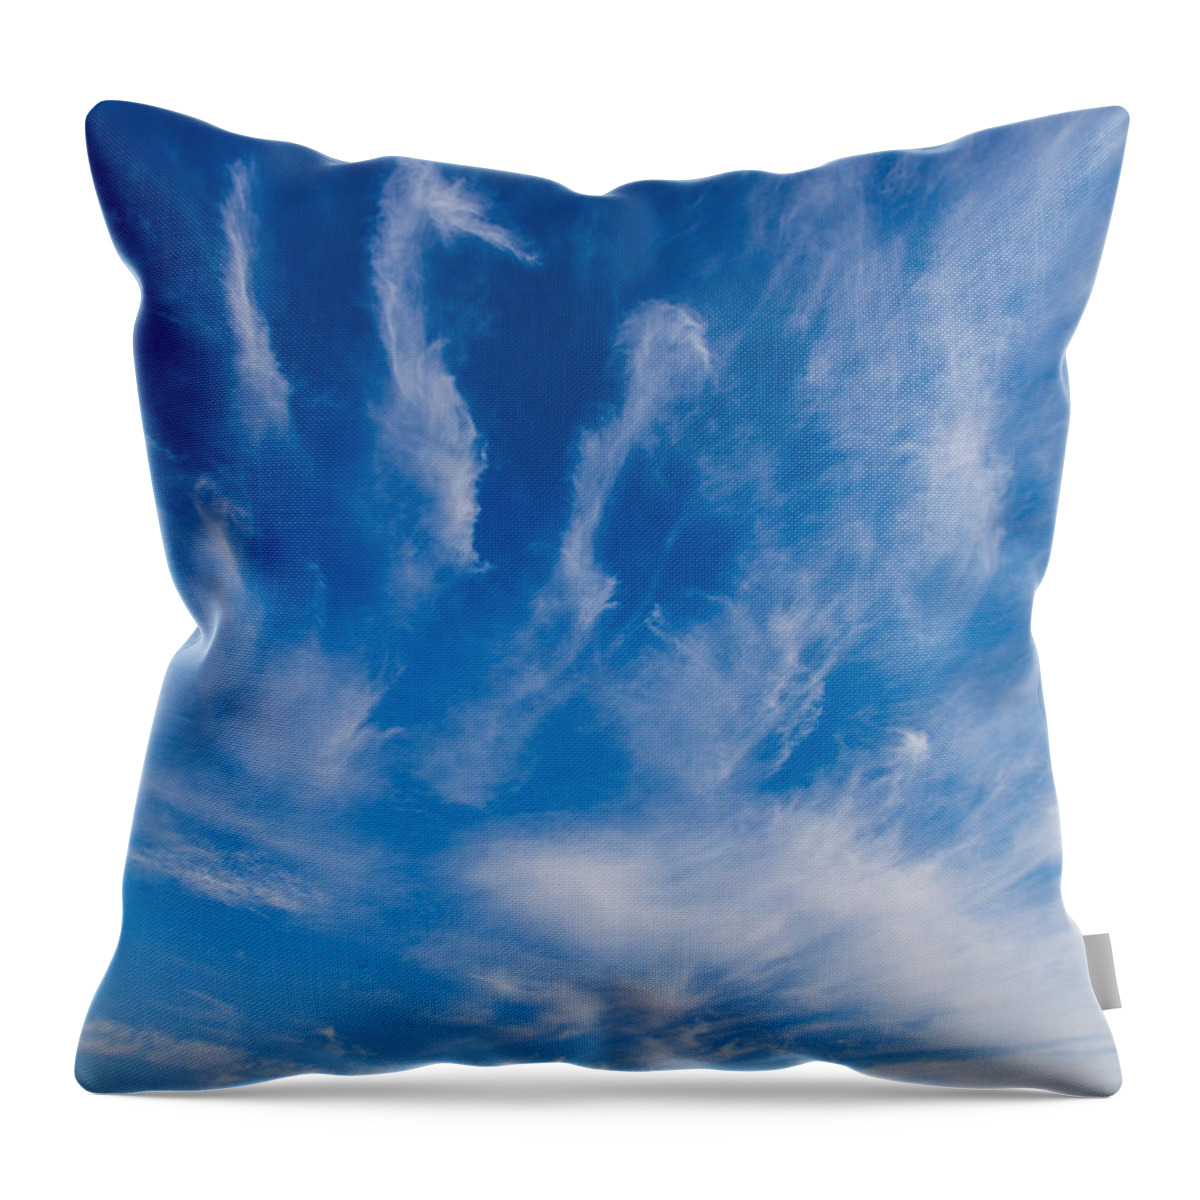 Holland Throw Pillow featuring the photograph Sky spirits by Casper Cammeraat